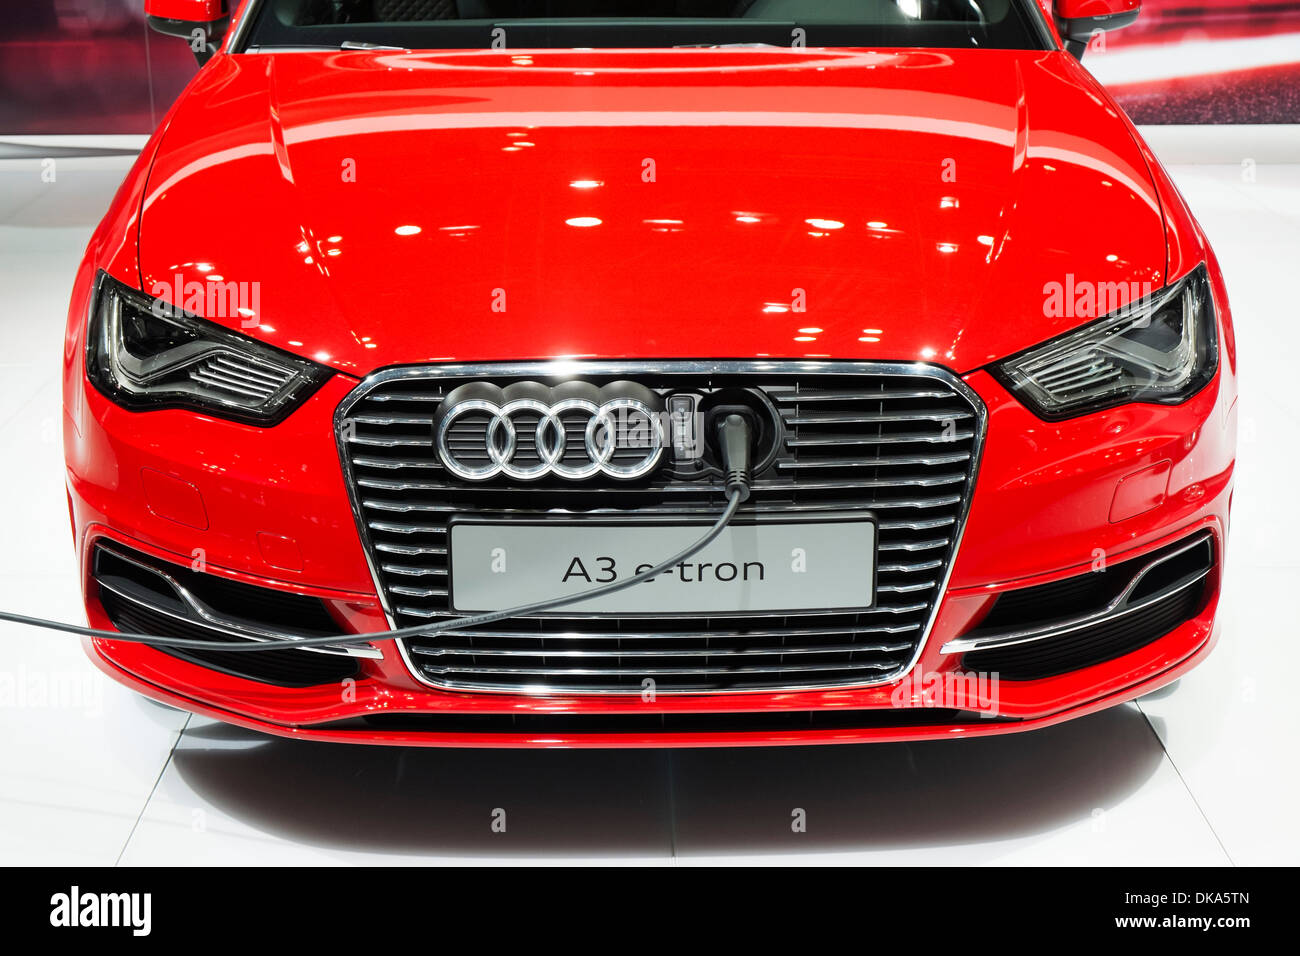 Détail de la fiche électrique dans Audi A3 e-tron au Salon de l'automobile 2013 au Japon Banque D'Images